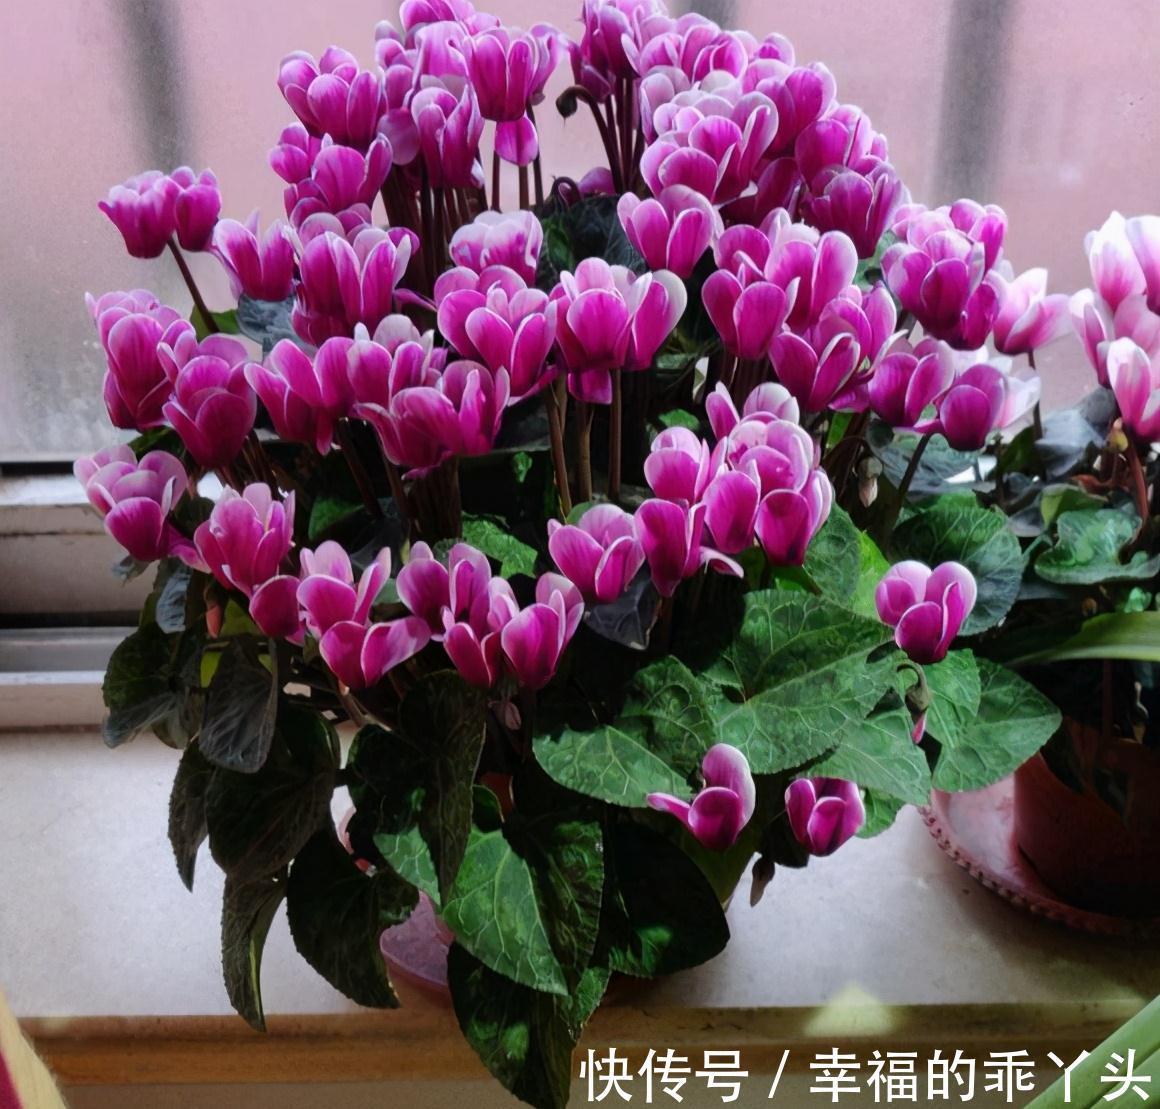 5种 耐寒花 好看不怕冻 低温也能爆花 一直开到初夏 粉紫色